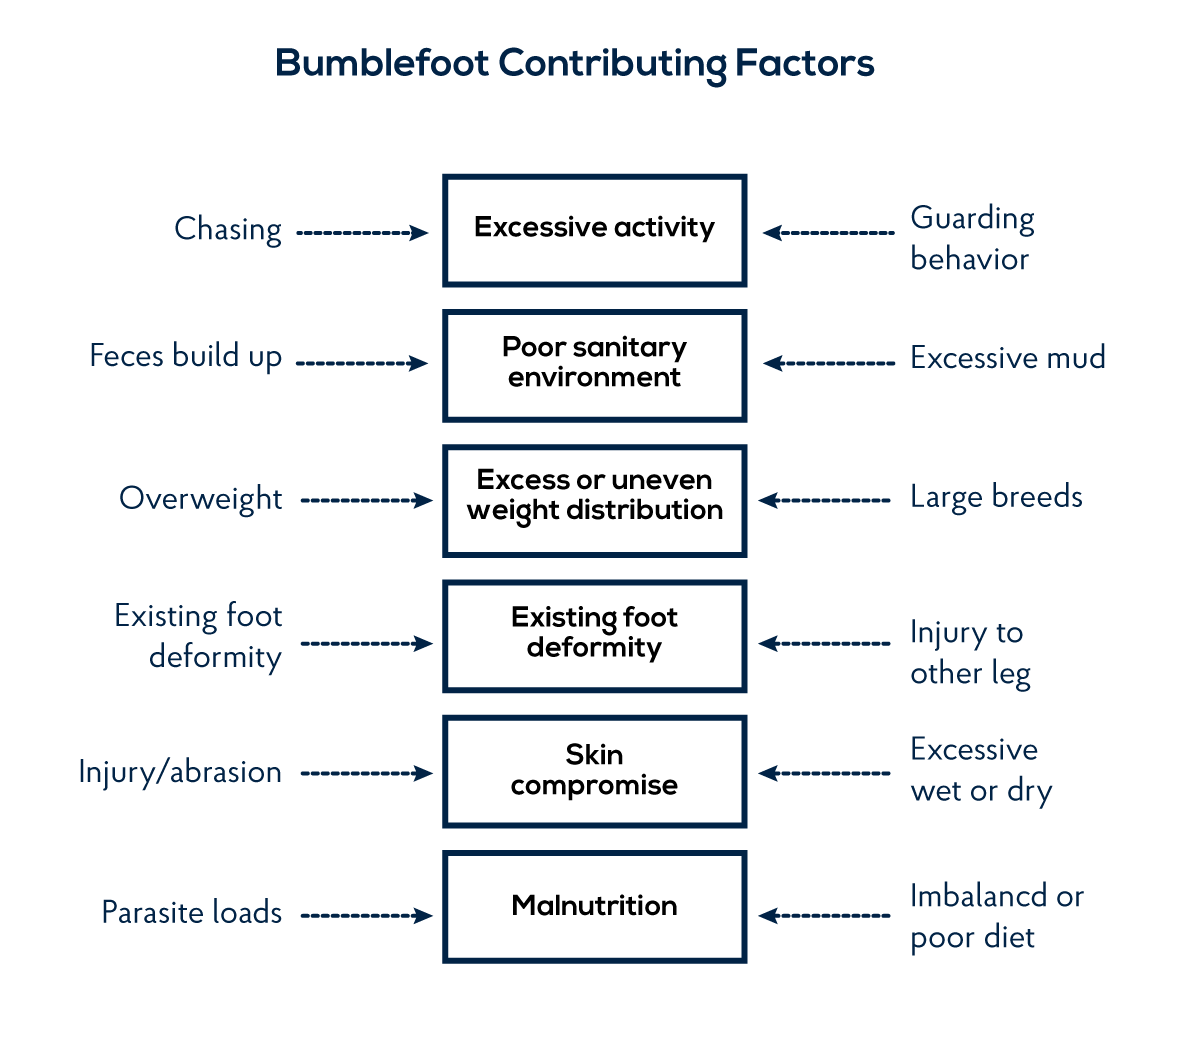 Bumblefoot contributing factors in ducks